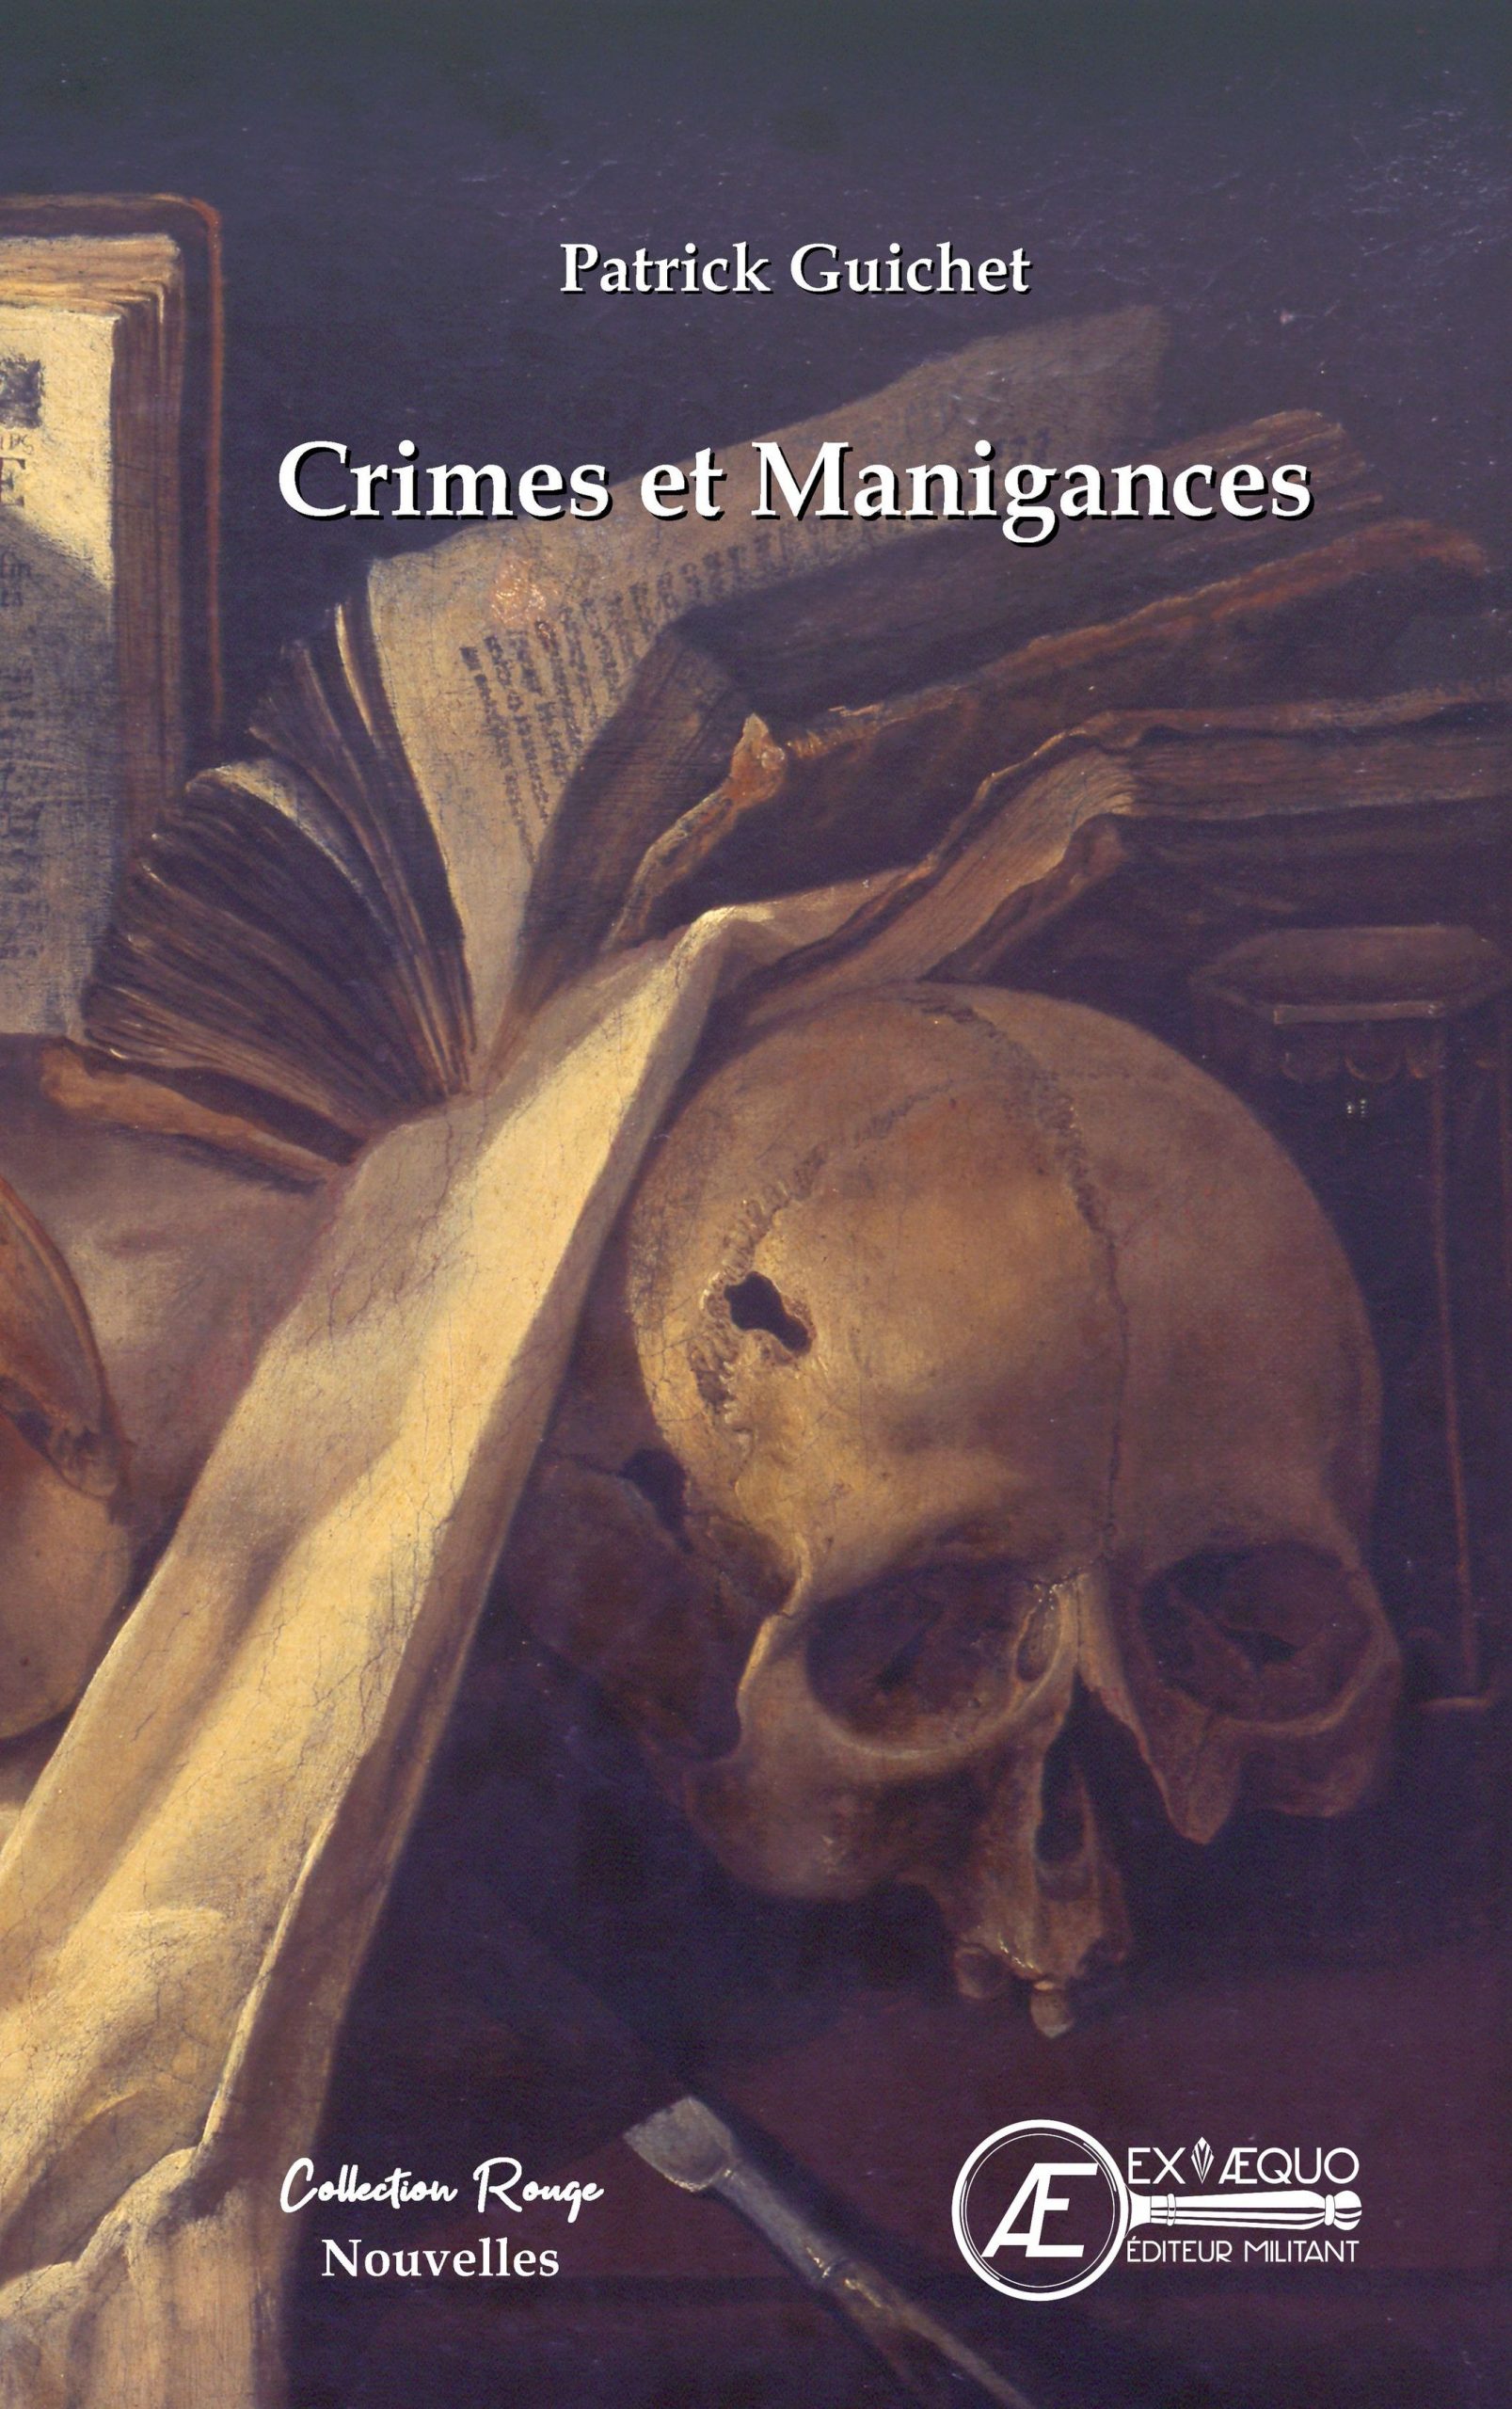 You are currently viewing Crimes et manigances, de Patrick Guichet